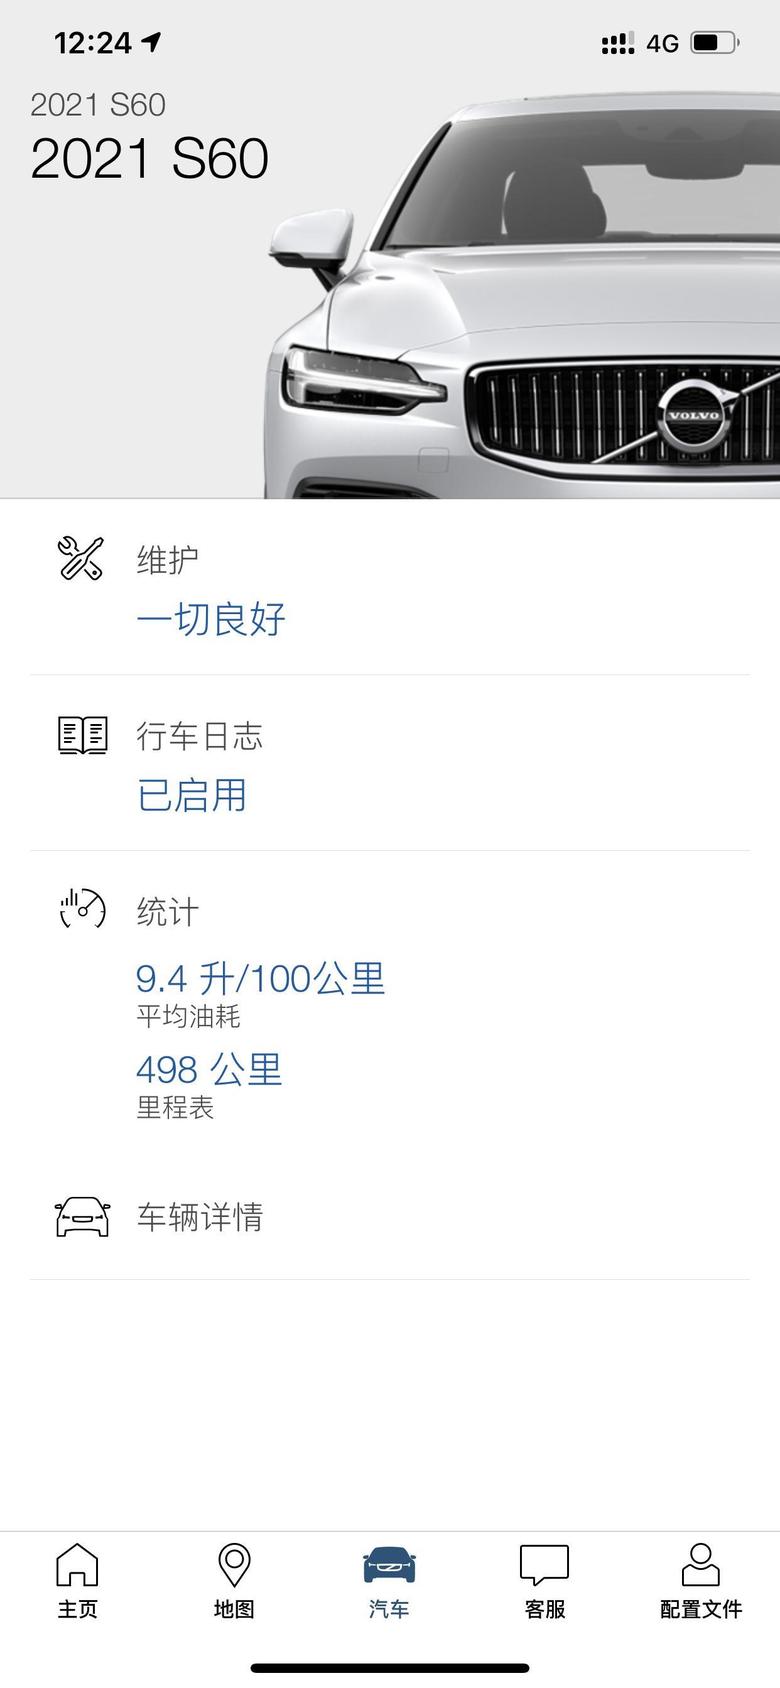 沃尔沃s60 recharge 坐标深圳，配置T8豪华版，500公里新车，为深圳朋友在线解答用车感受